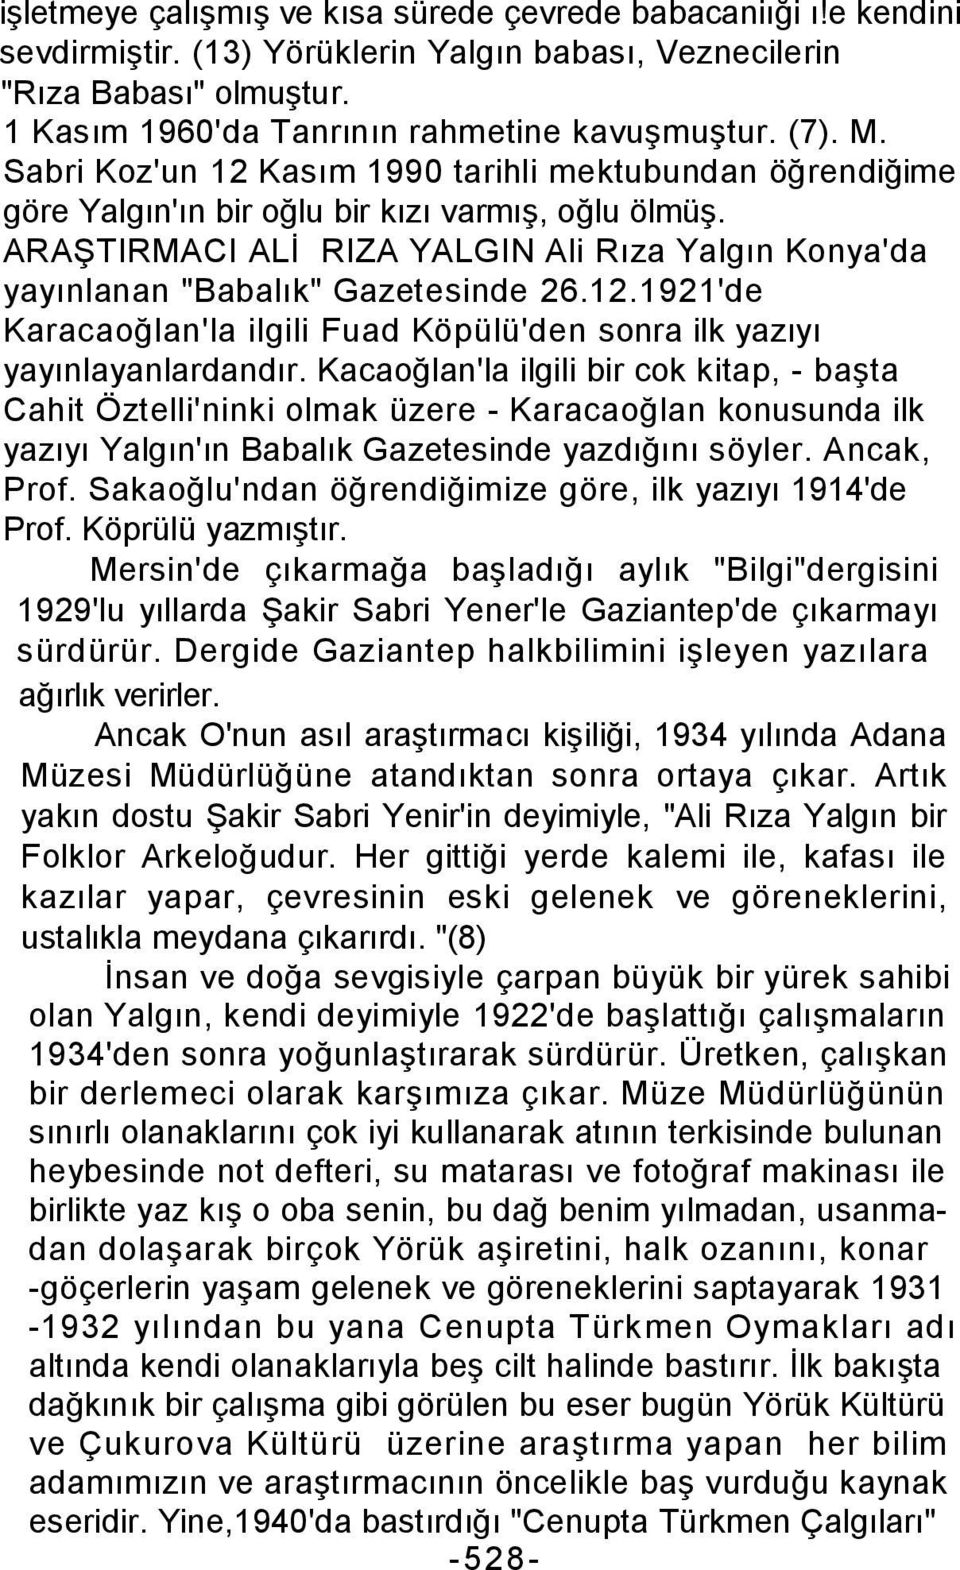 ARAŞTIRMACI ALİ RIZA YALGIN Ali Rıza Yalgın Konya'da yayınlanan "Babalık" Gazetesinde 26.12.1921'de Karacaoğlan'la ilgili Fuad Köpülü'den sonra ilk yazıyı yayınlayanlardandır.